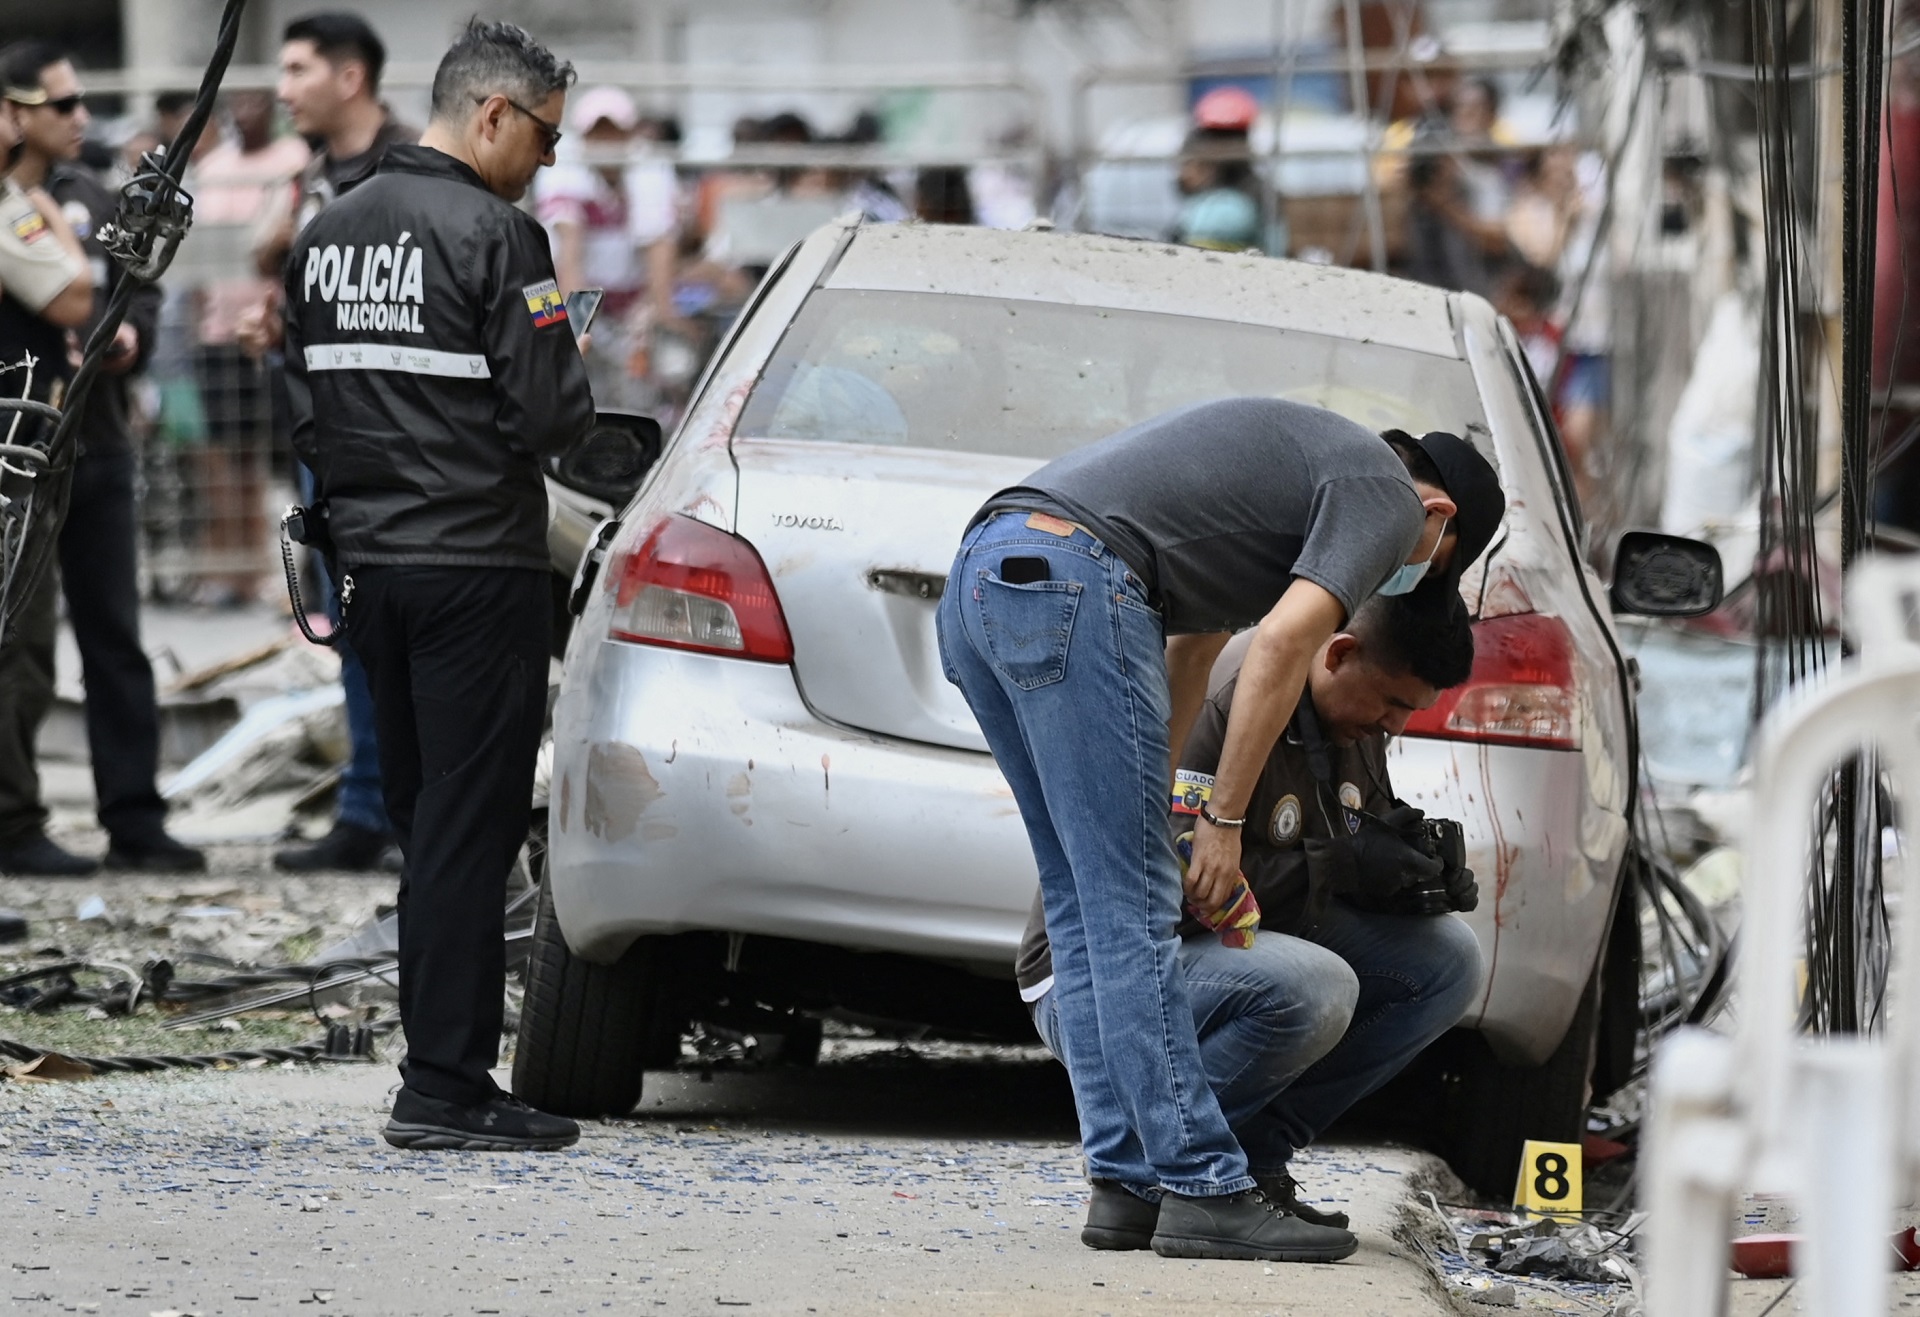 Miembros de la Policía Nacional inspeccionan el lugar de una explosión, que el gobierno ecuatoriano atribuye al crimen organizado, en el sur de Guayaquil, Ecuador, el 14 de agosto de 2022 (AFP)
